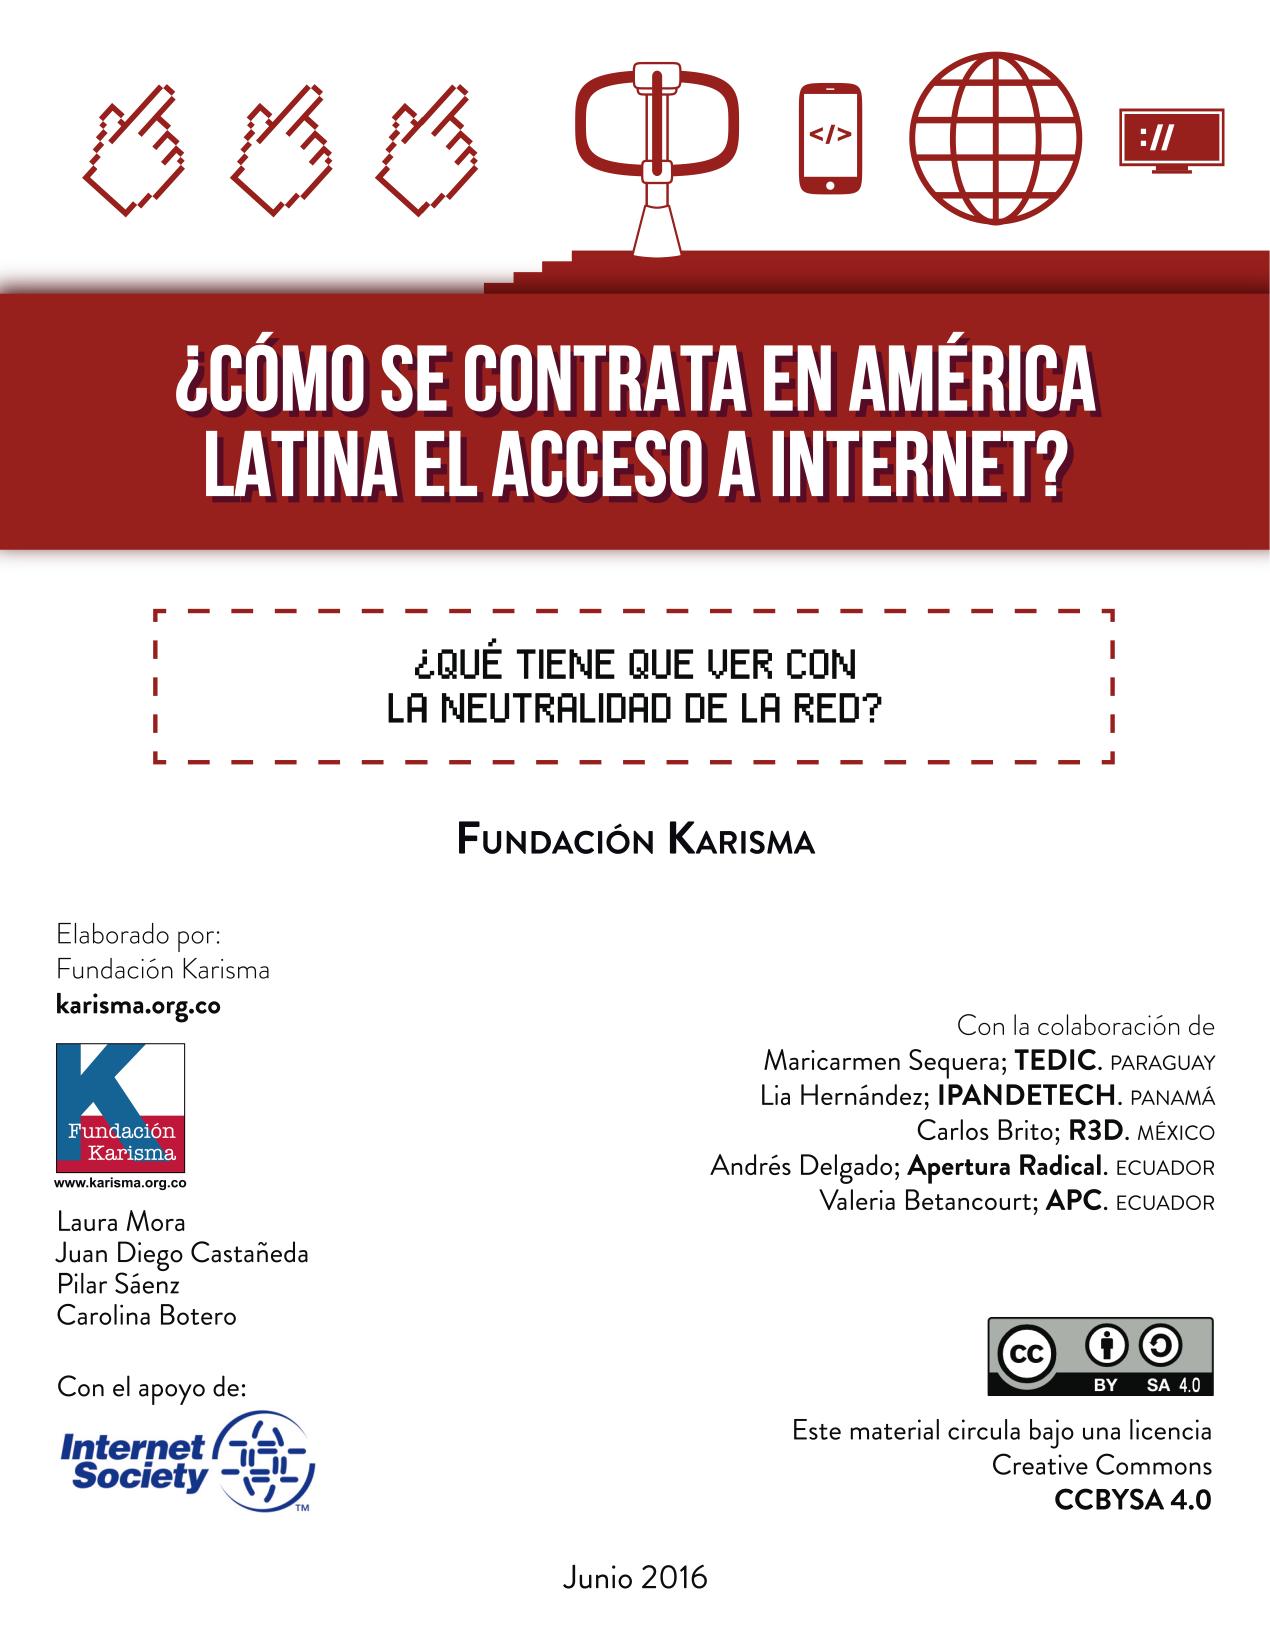 ¿Cómo se contrata el acceso a internet en américa latina? :: ¿qué tiene que ver con la neutralidad de la red?